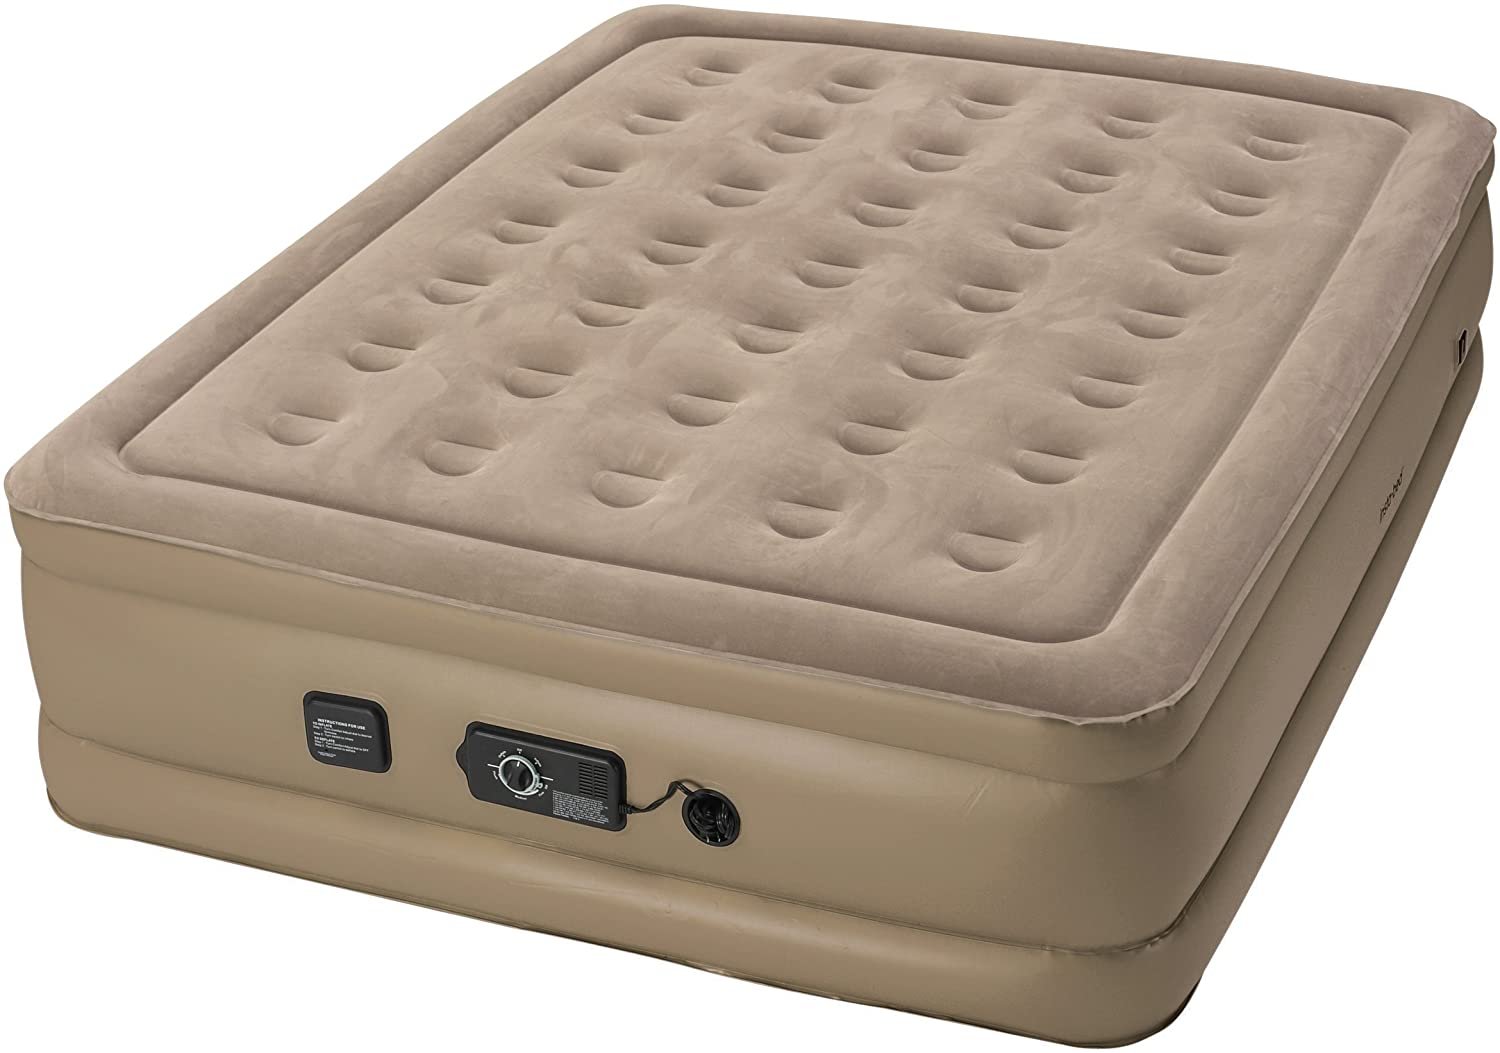 swiss army air mattress reviews